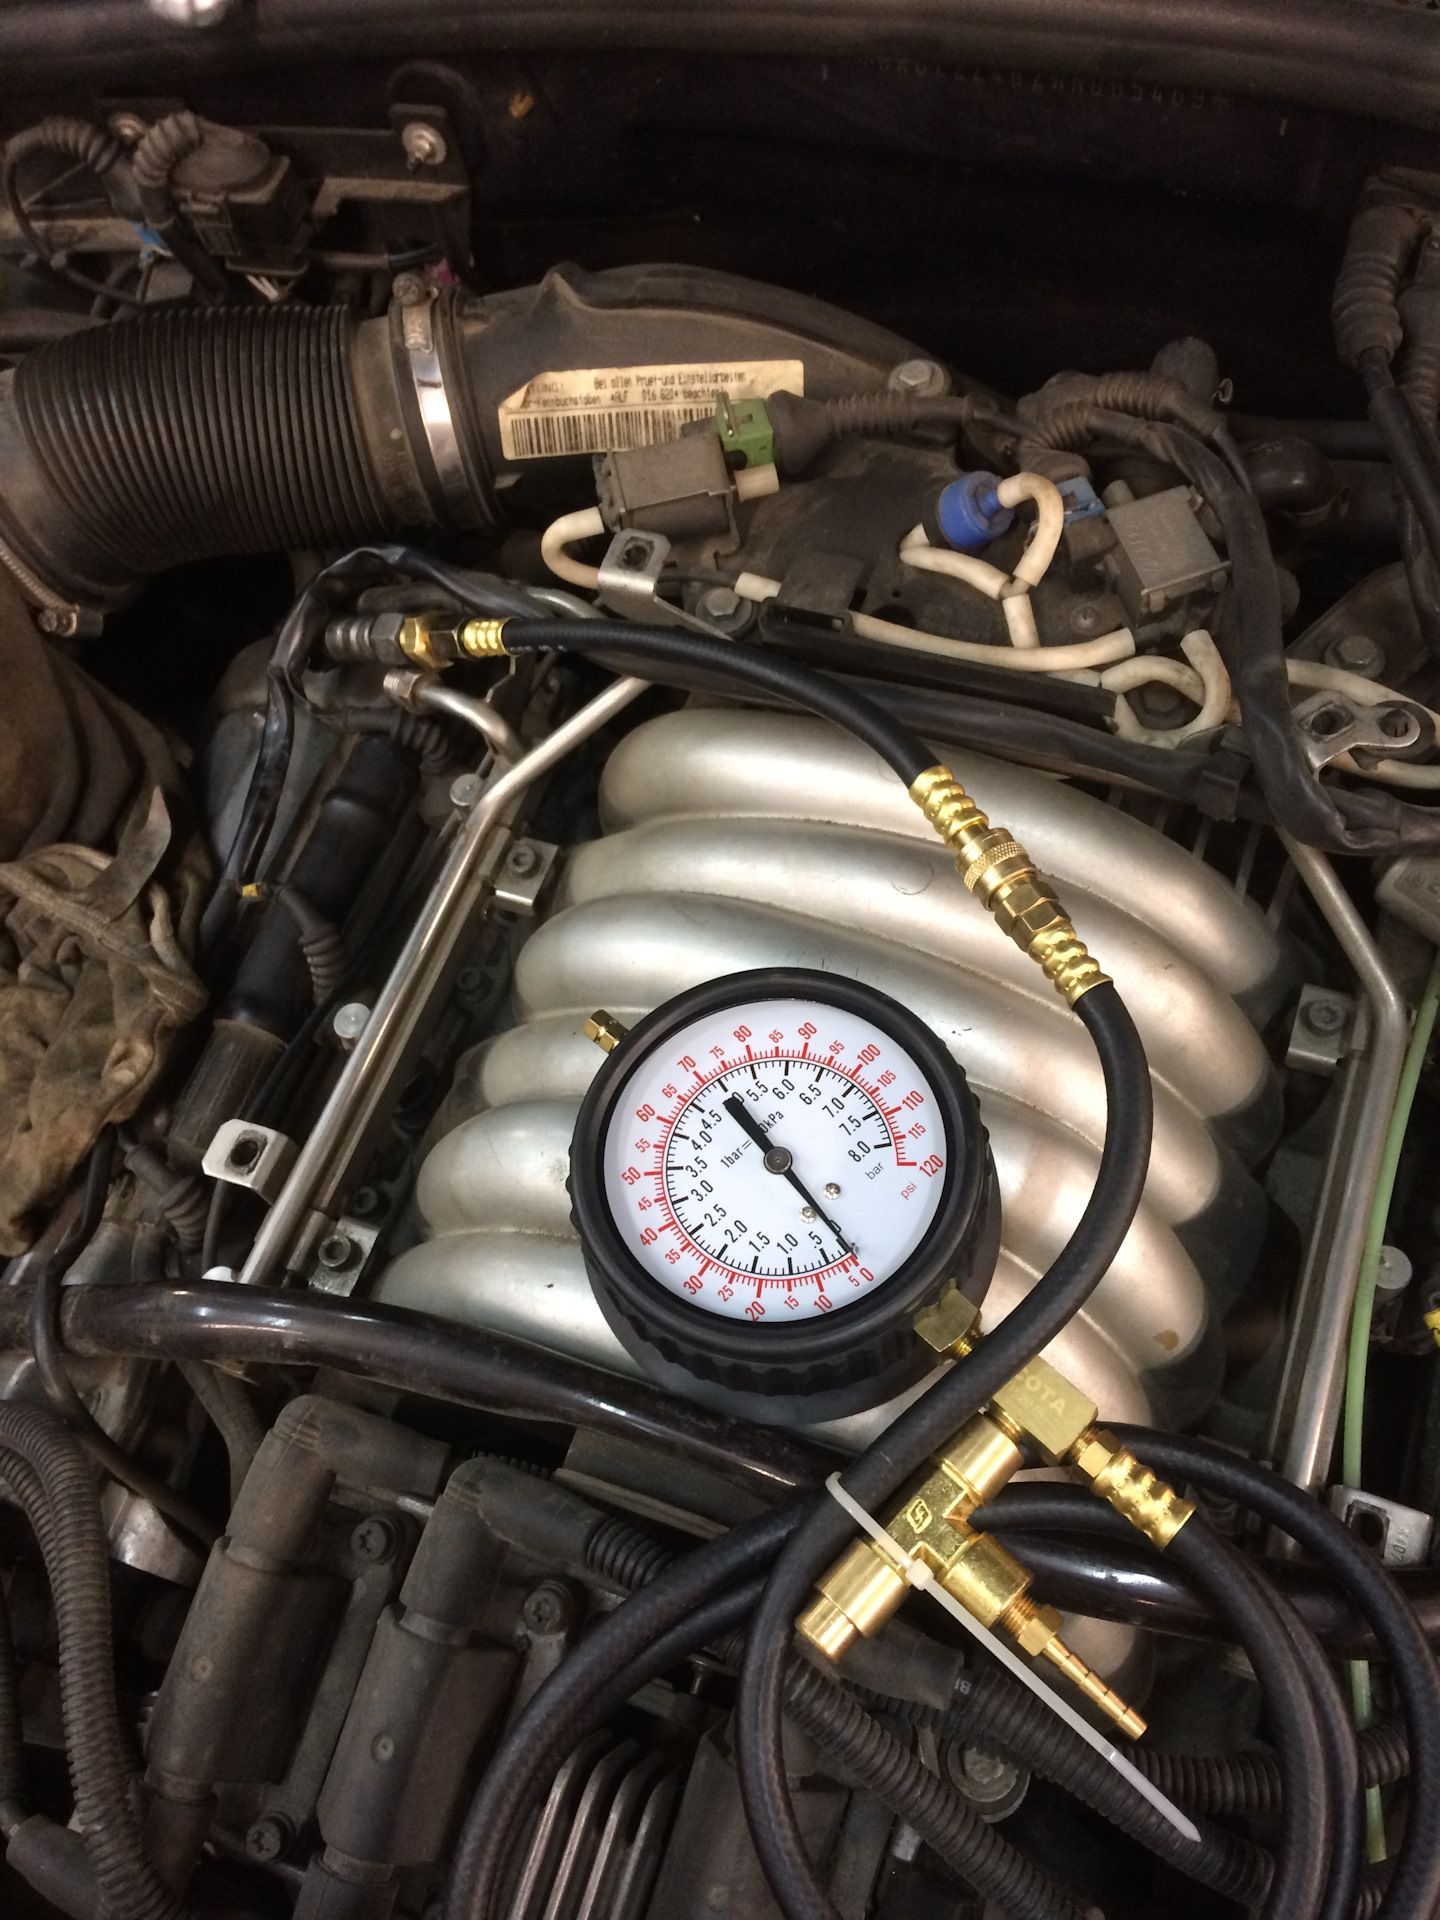 Масло ауди а6 2.8. Регулятора давления топлива Audi a6 c5 2.7. Замерить давление топлива Ауди 100 с4. Audi a6 2,8 v6 замер давления топлива. РДТ Ауди а6 с5 2.4.